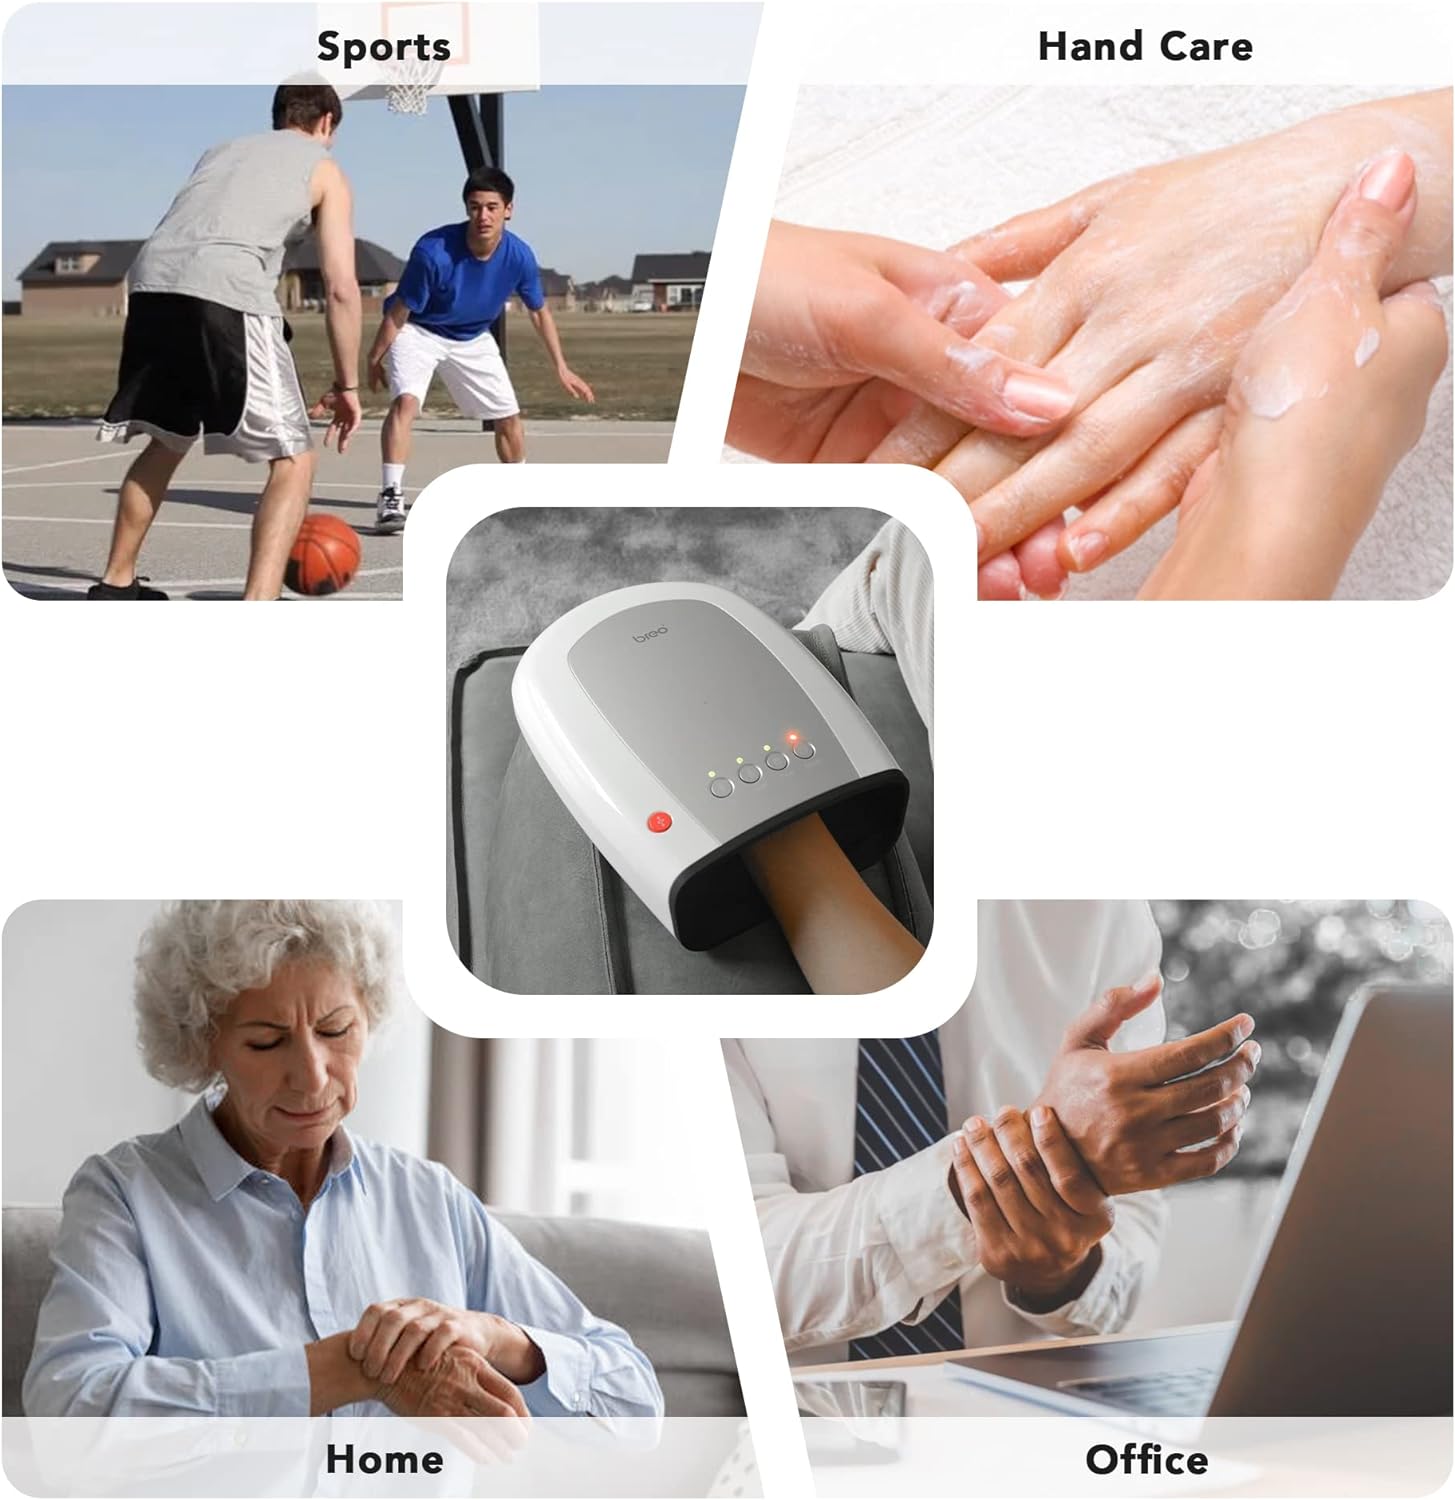 ماساژور دستی با گرما و فشرده سازی مدل Breo iPalm520e Electric Hand Massager - ارسال 25 الی 30 روز کاری